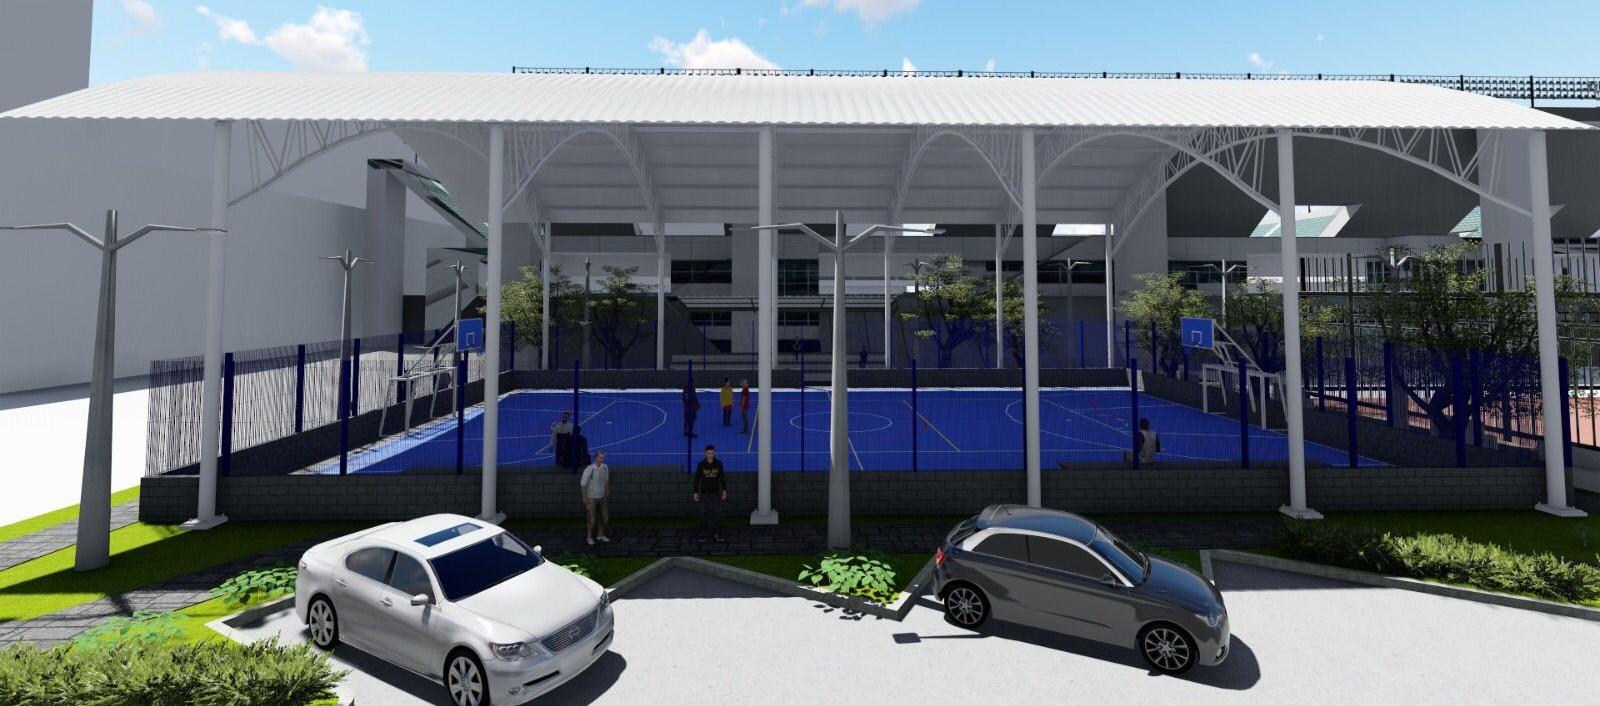 Diseño del nuevo polideportivo del barrio Hipódromo en Soledad.